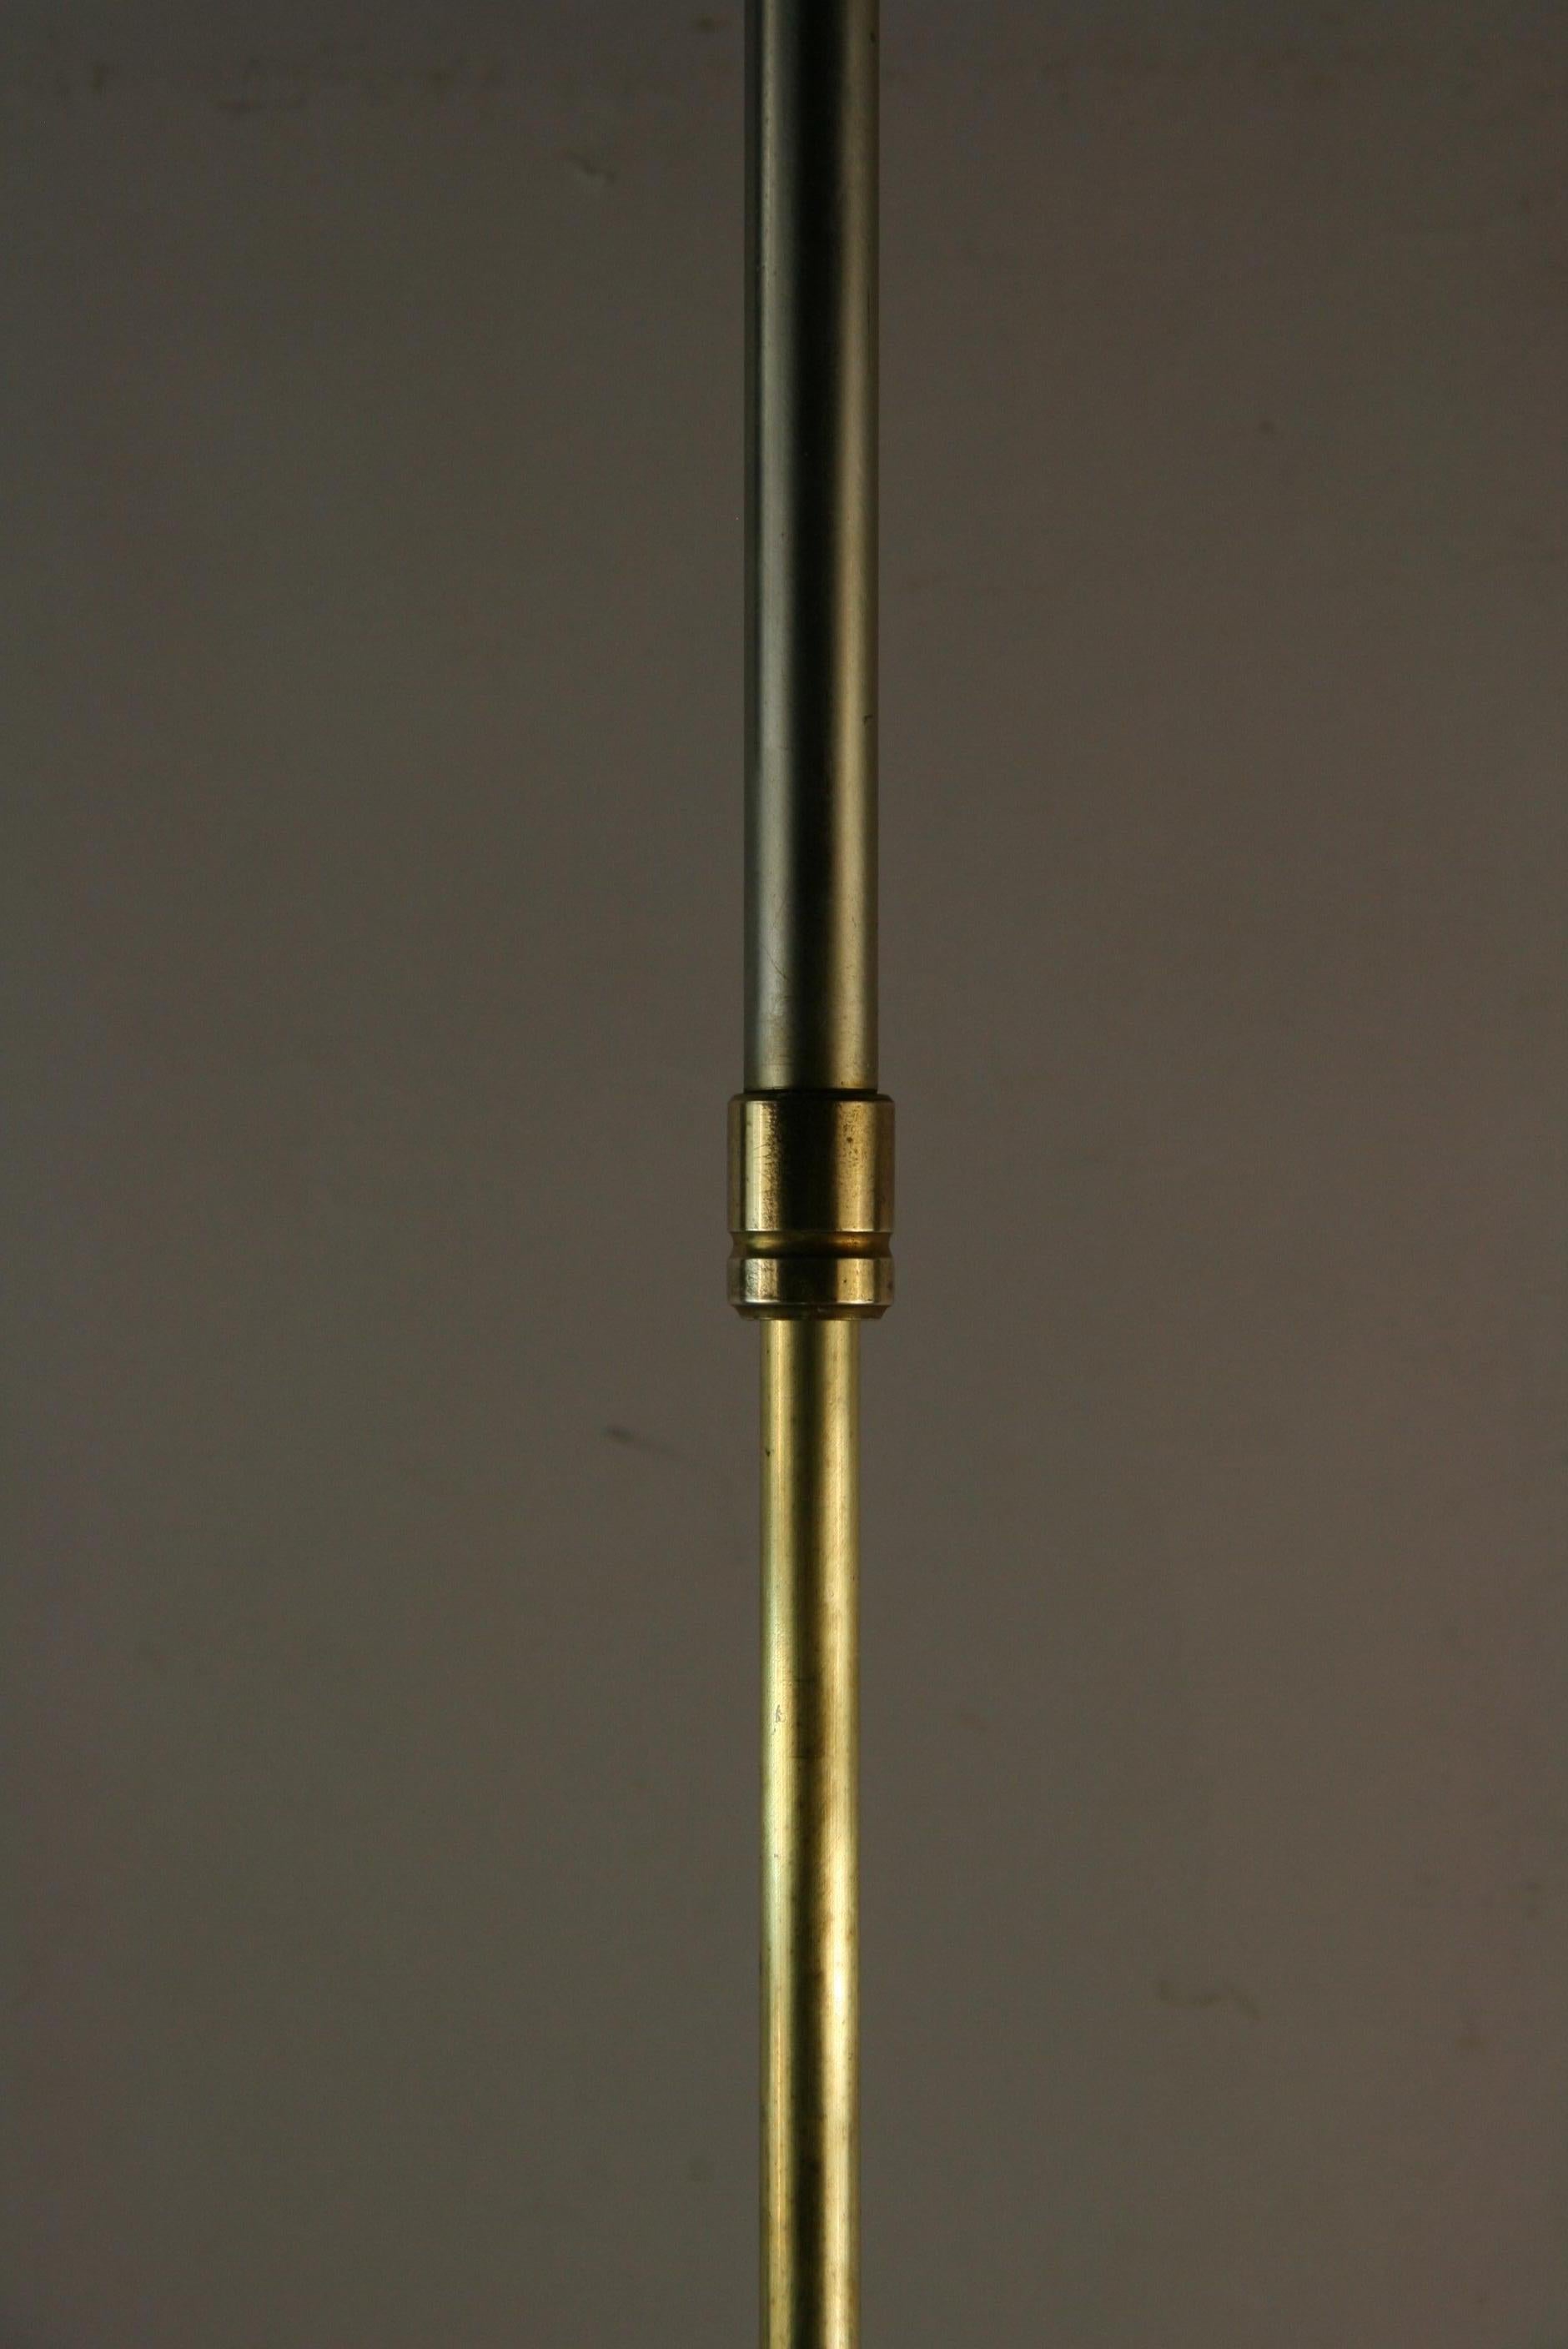 8-149a Lampadaire tripode réglable en laiton et nickel français
Besoin d'un recâblage
Prendre 2 ampoules de 60 watts
L'abat-jour n'est pas inclus.